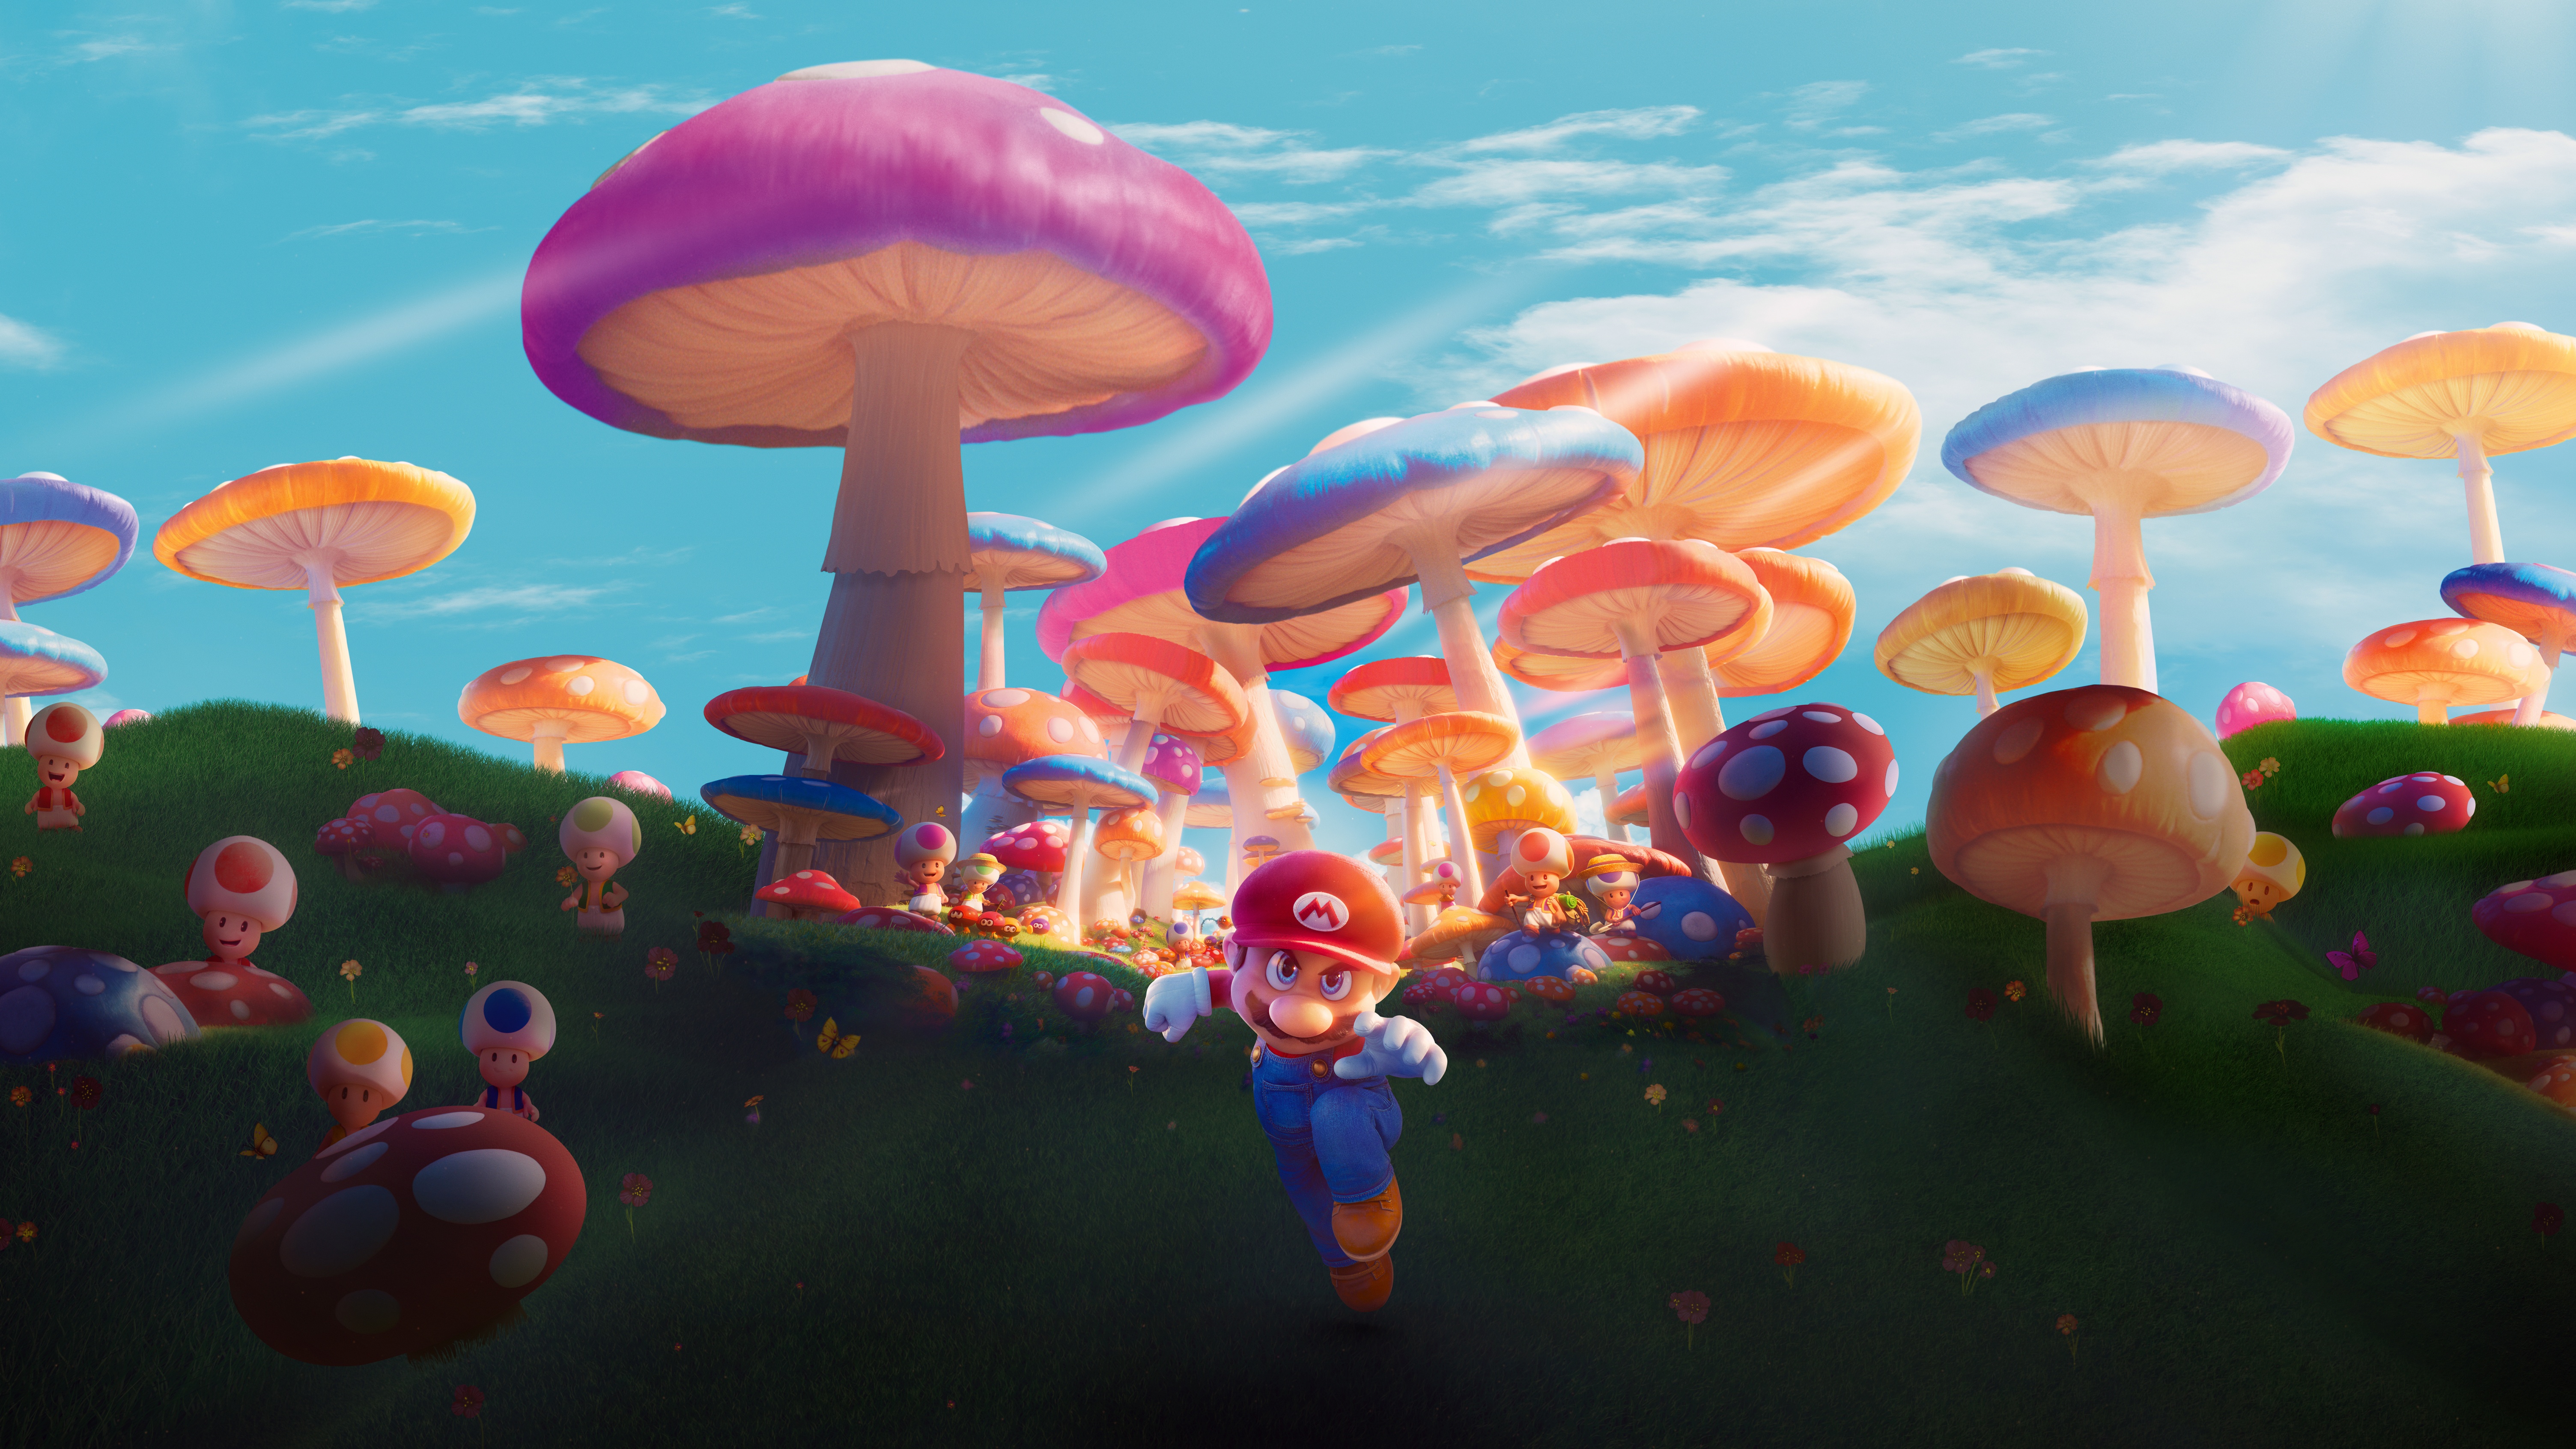 Wallpaper  Super Mario Land  Rewards  My Nintendo